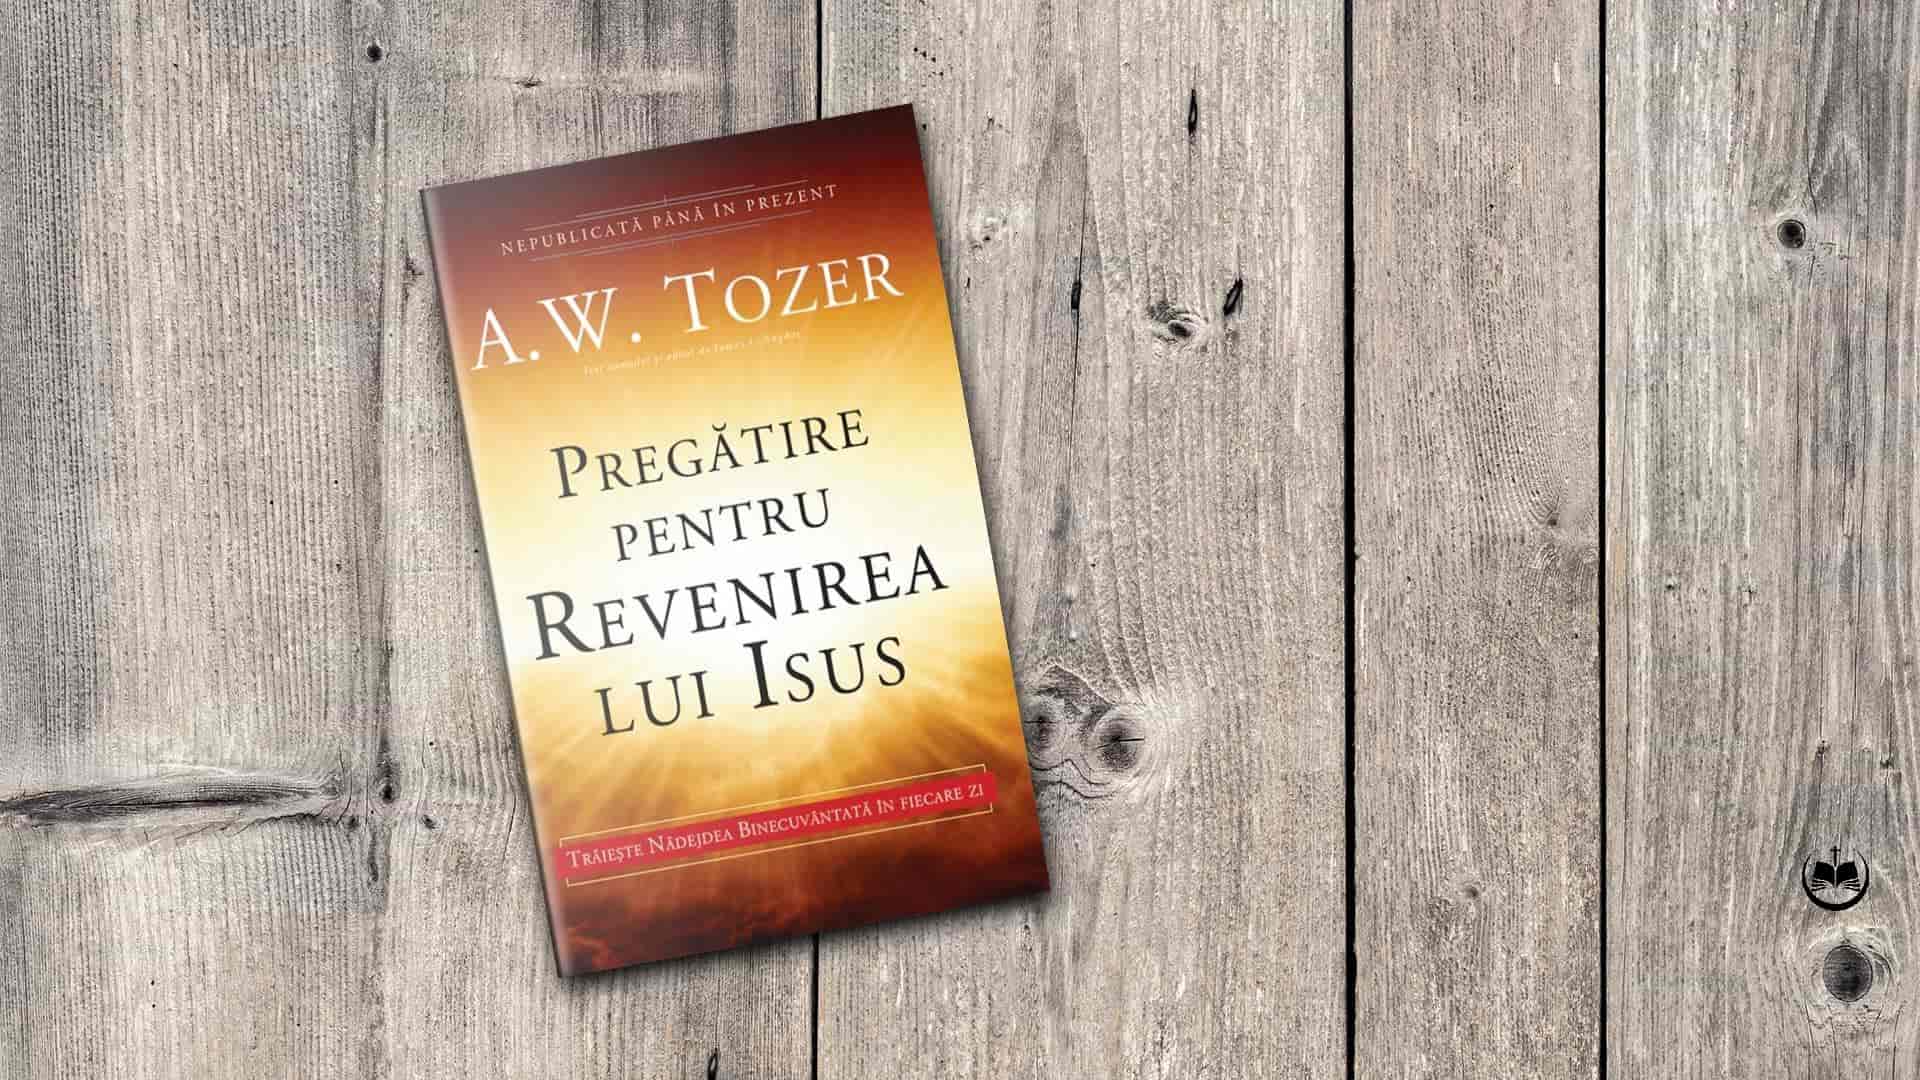 Pregătire pentru revenirea lui Isus - A. W. Tozer - Biblioteca Creștină